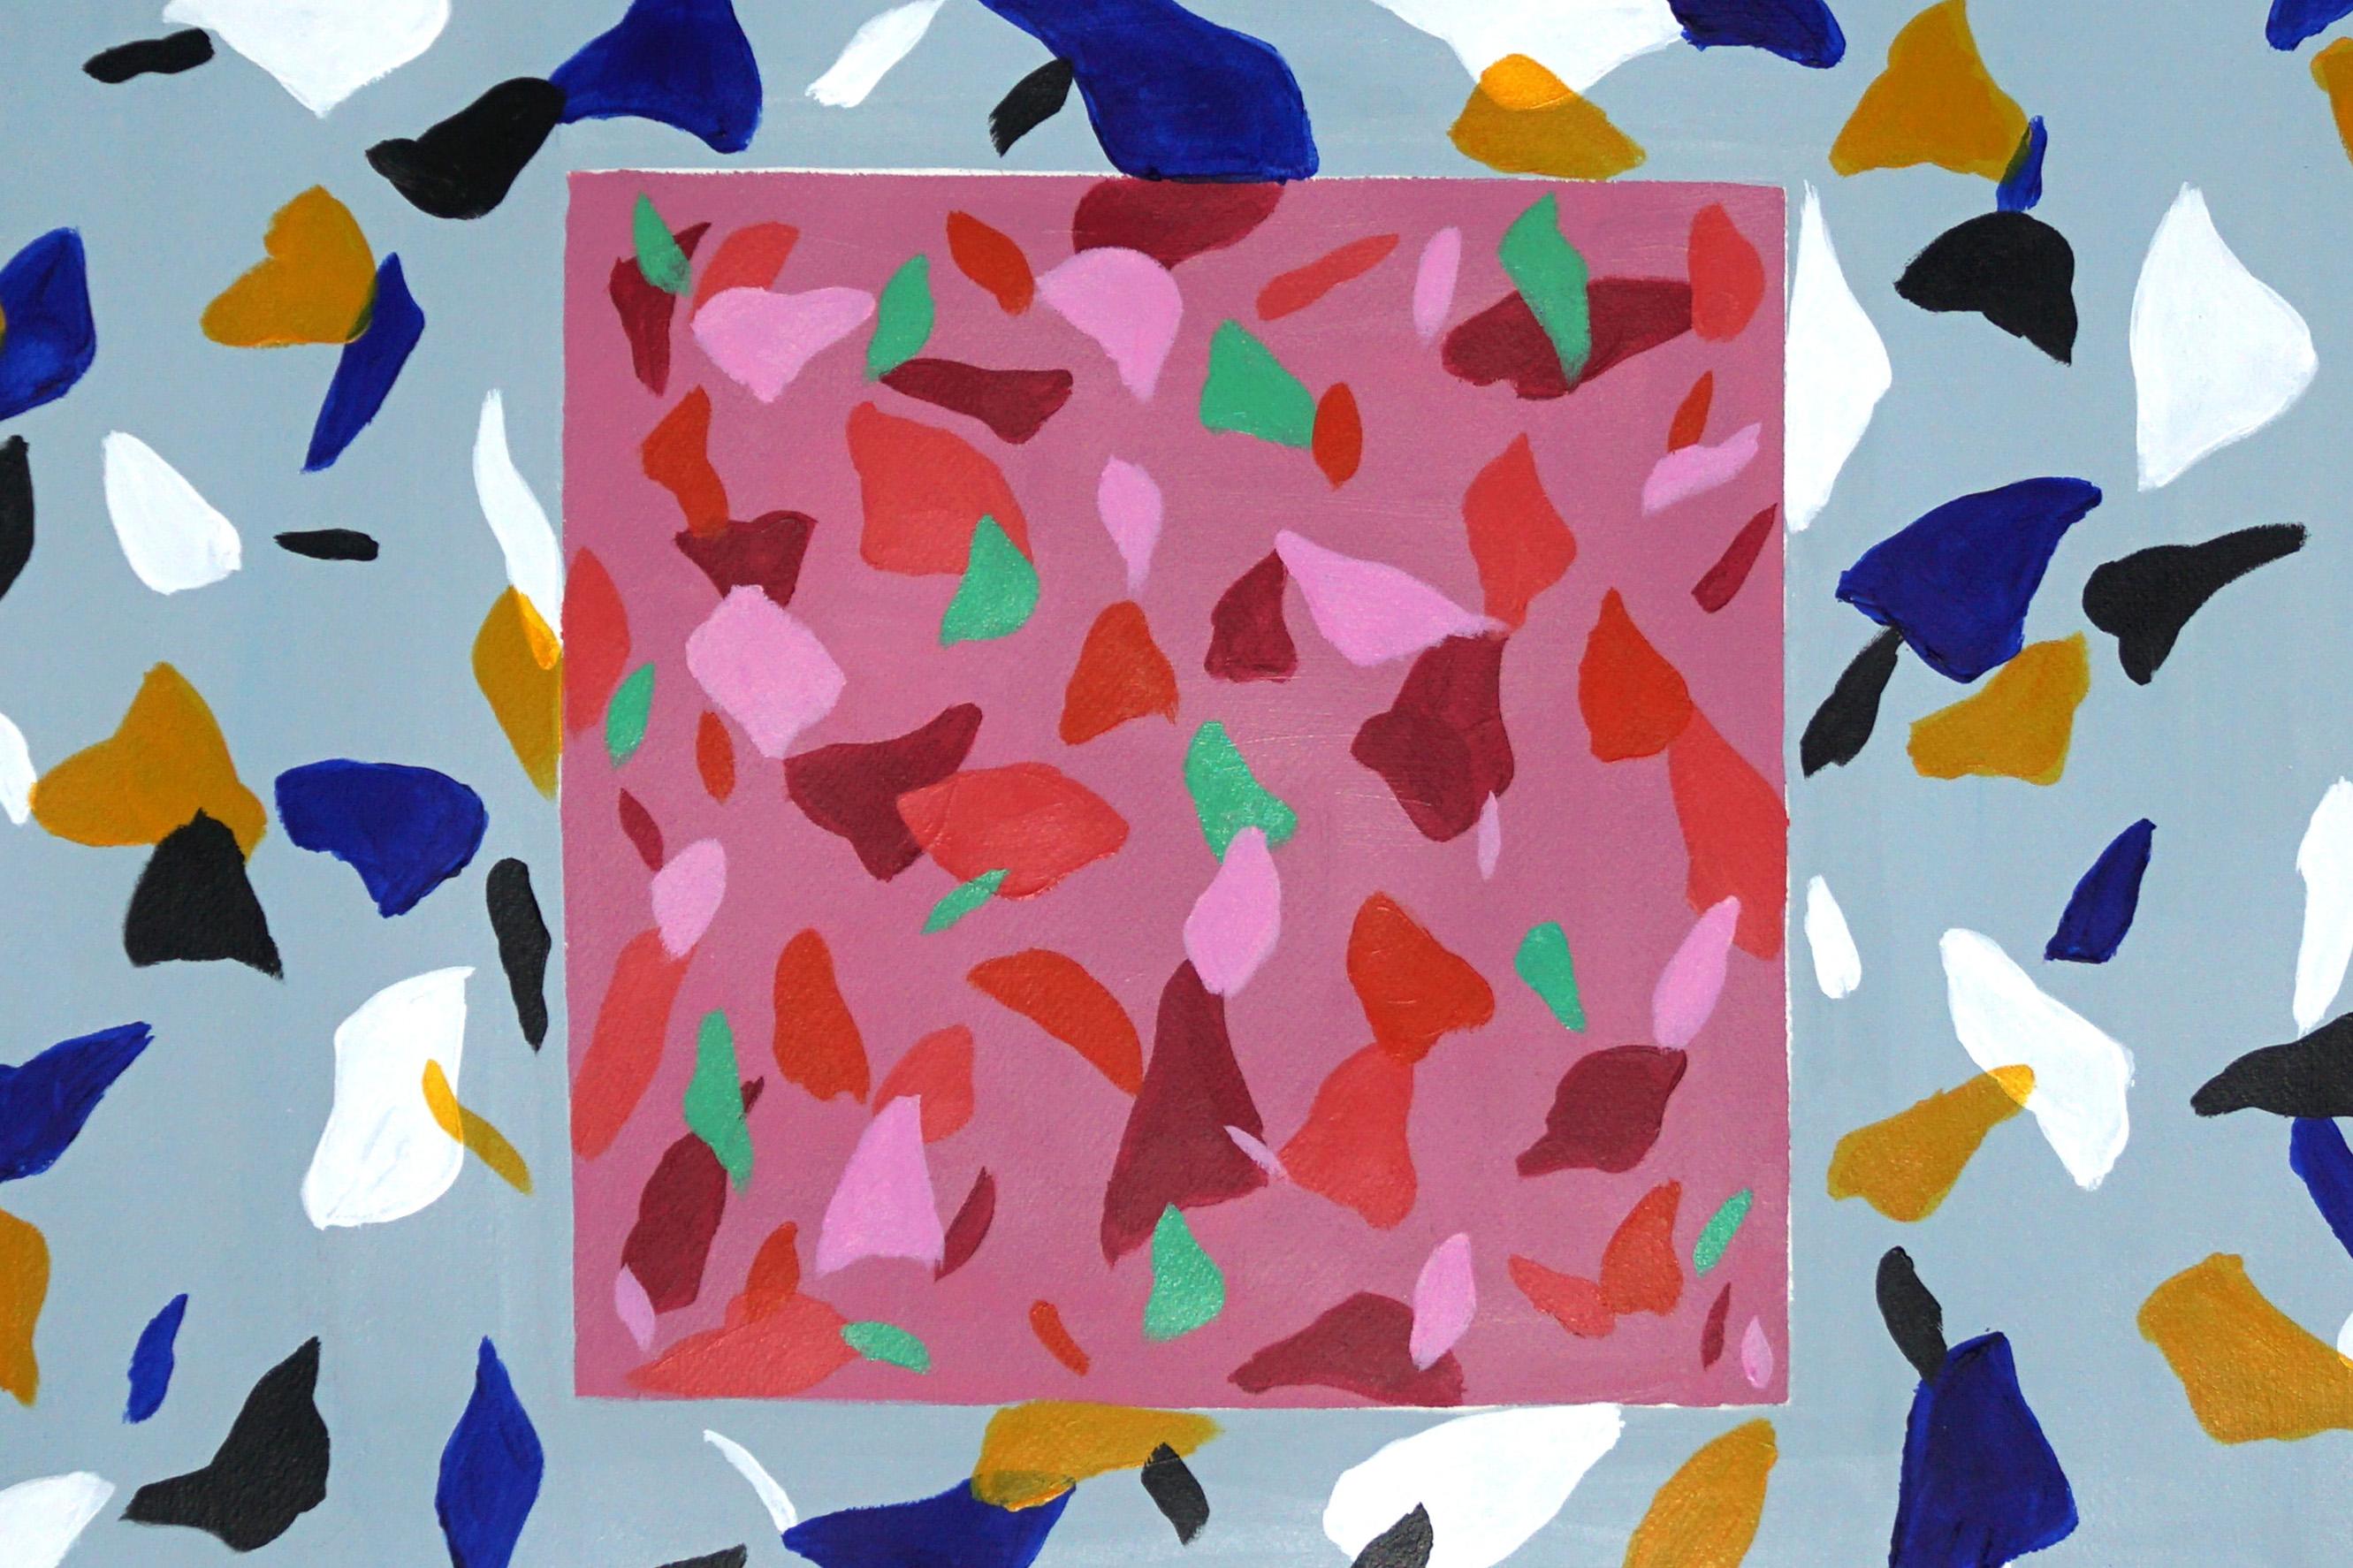 Cette série de peintures acryliques réalisées à la main par Natalia Roman s'inspire des couleurs et des textures du carrelage italien en terrazzo. Les motifs créés combinent une variété de couleurs vives au premier plan avec des tons subtils en